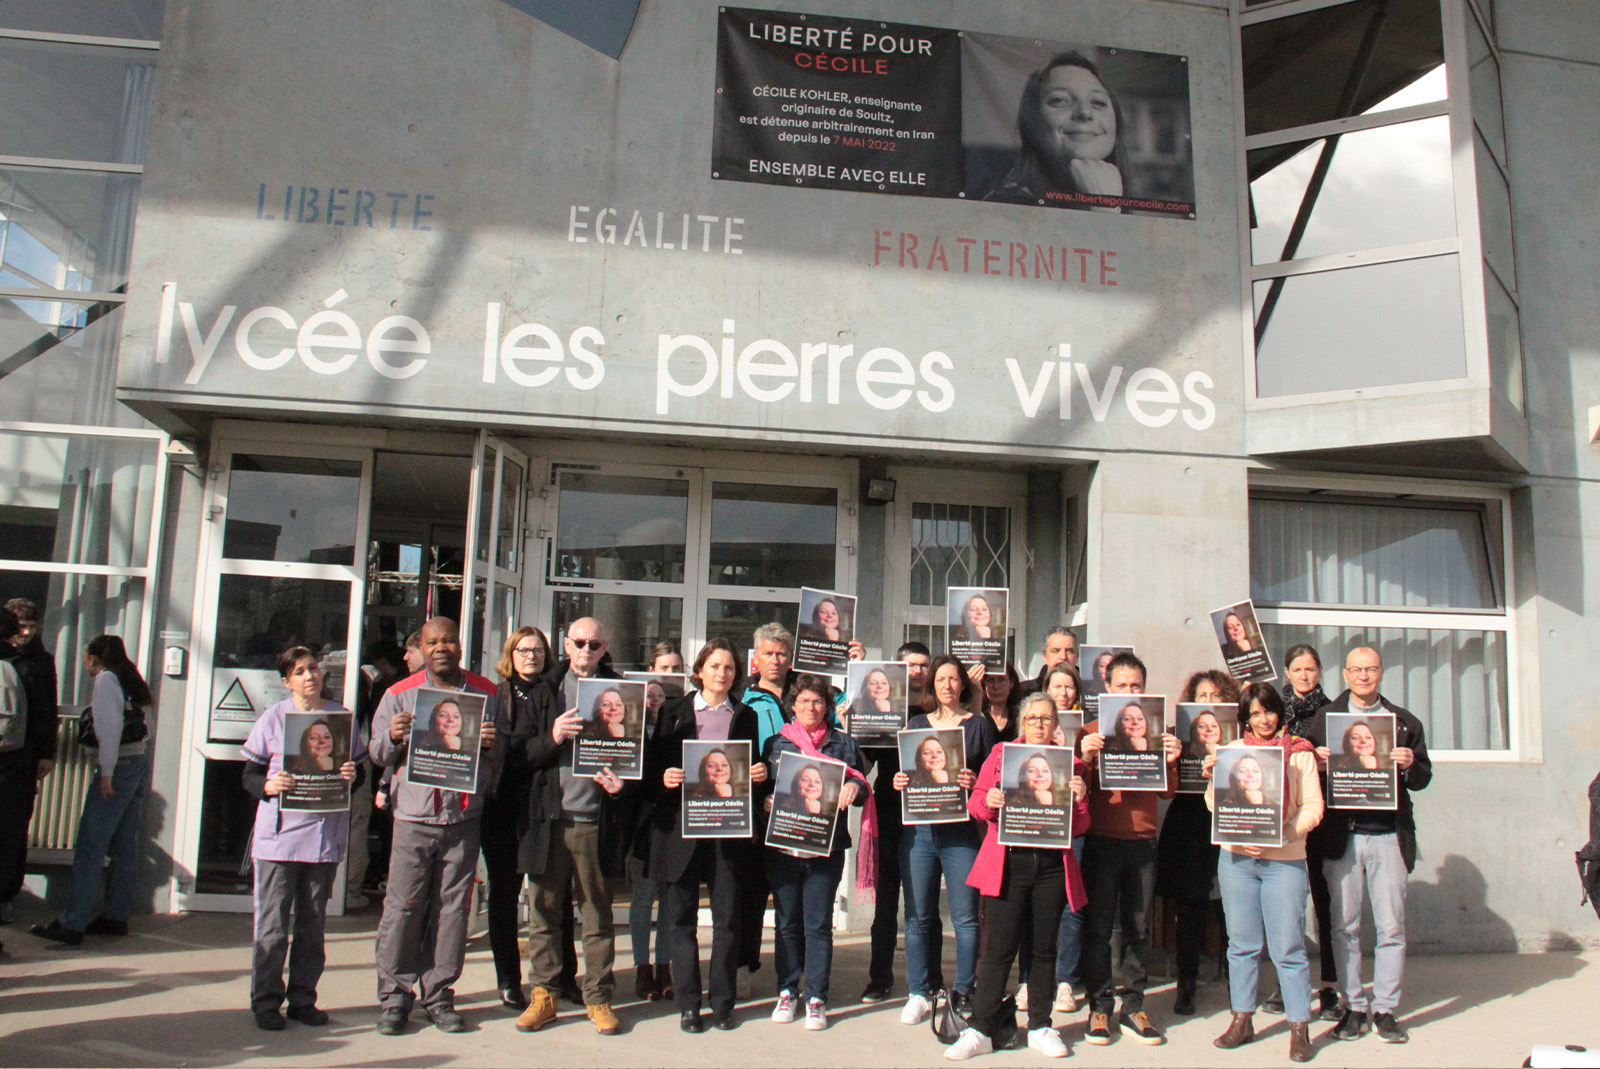 Cécile Kohler, enseignante française, est détenue injustement en Iran depuis 18 mois